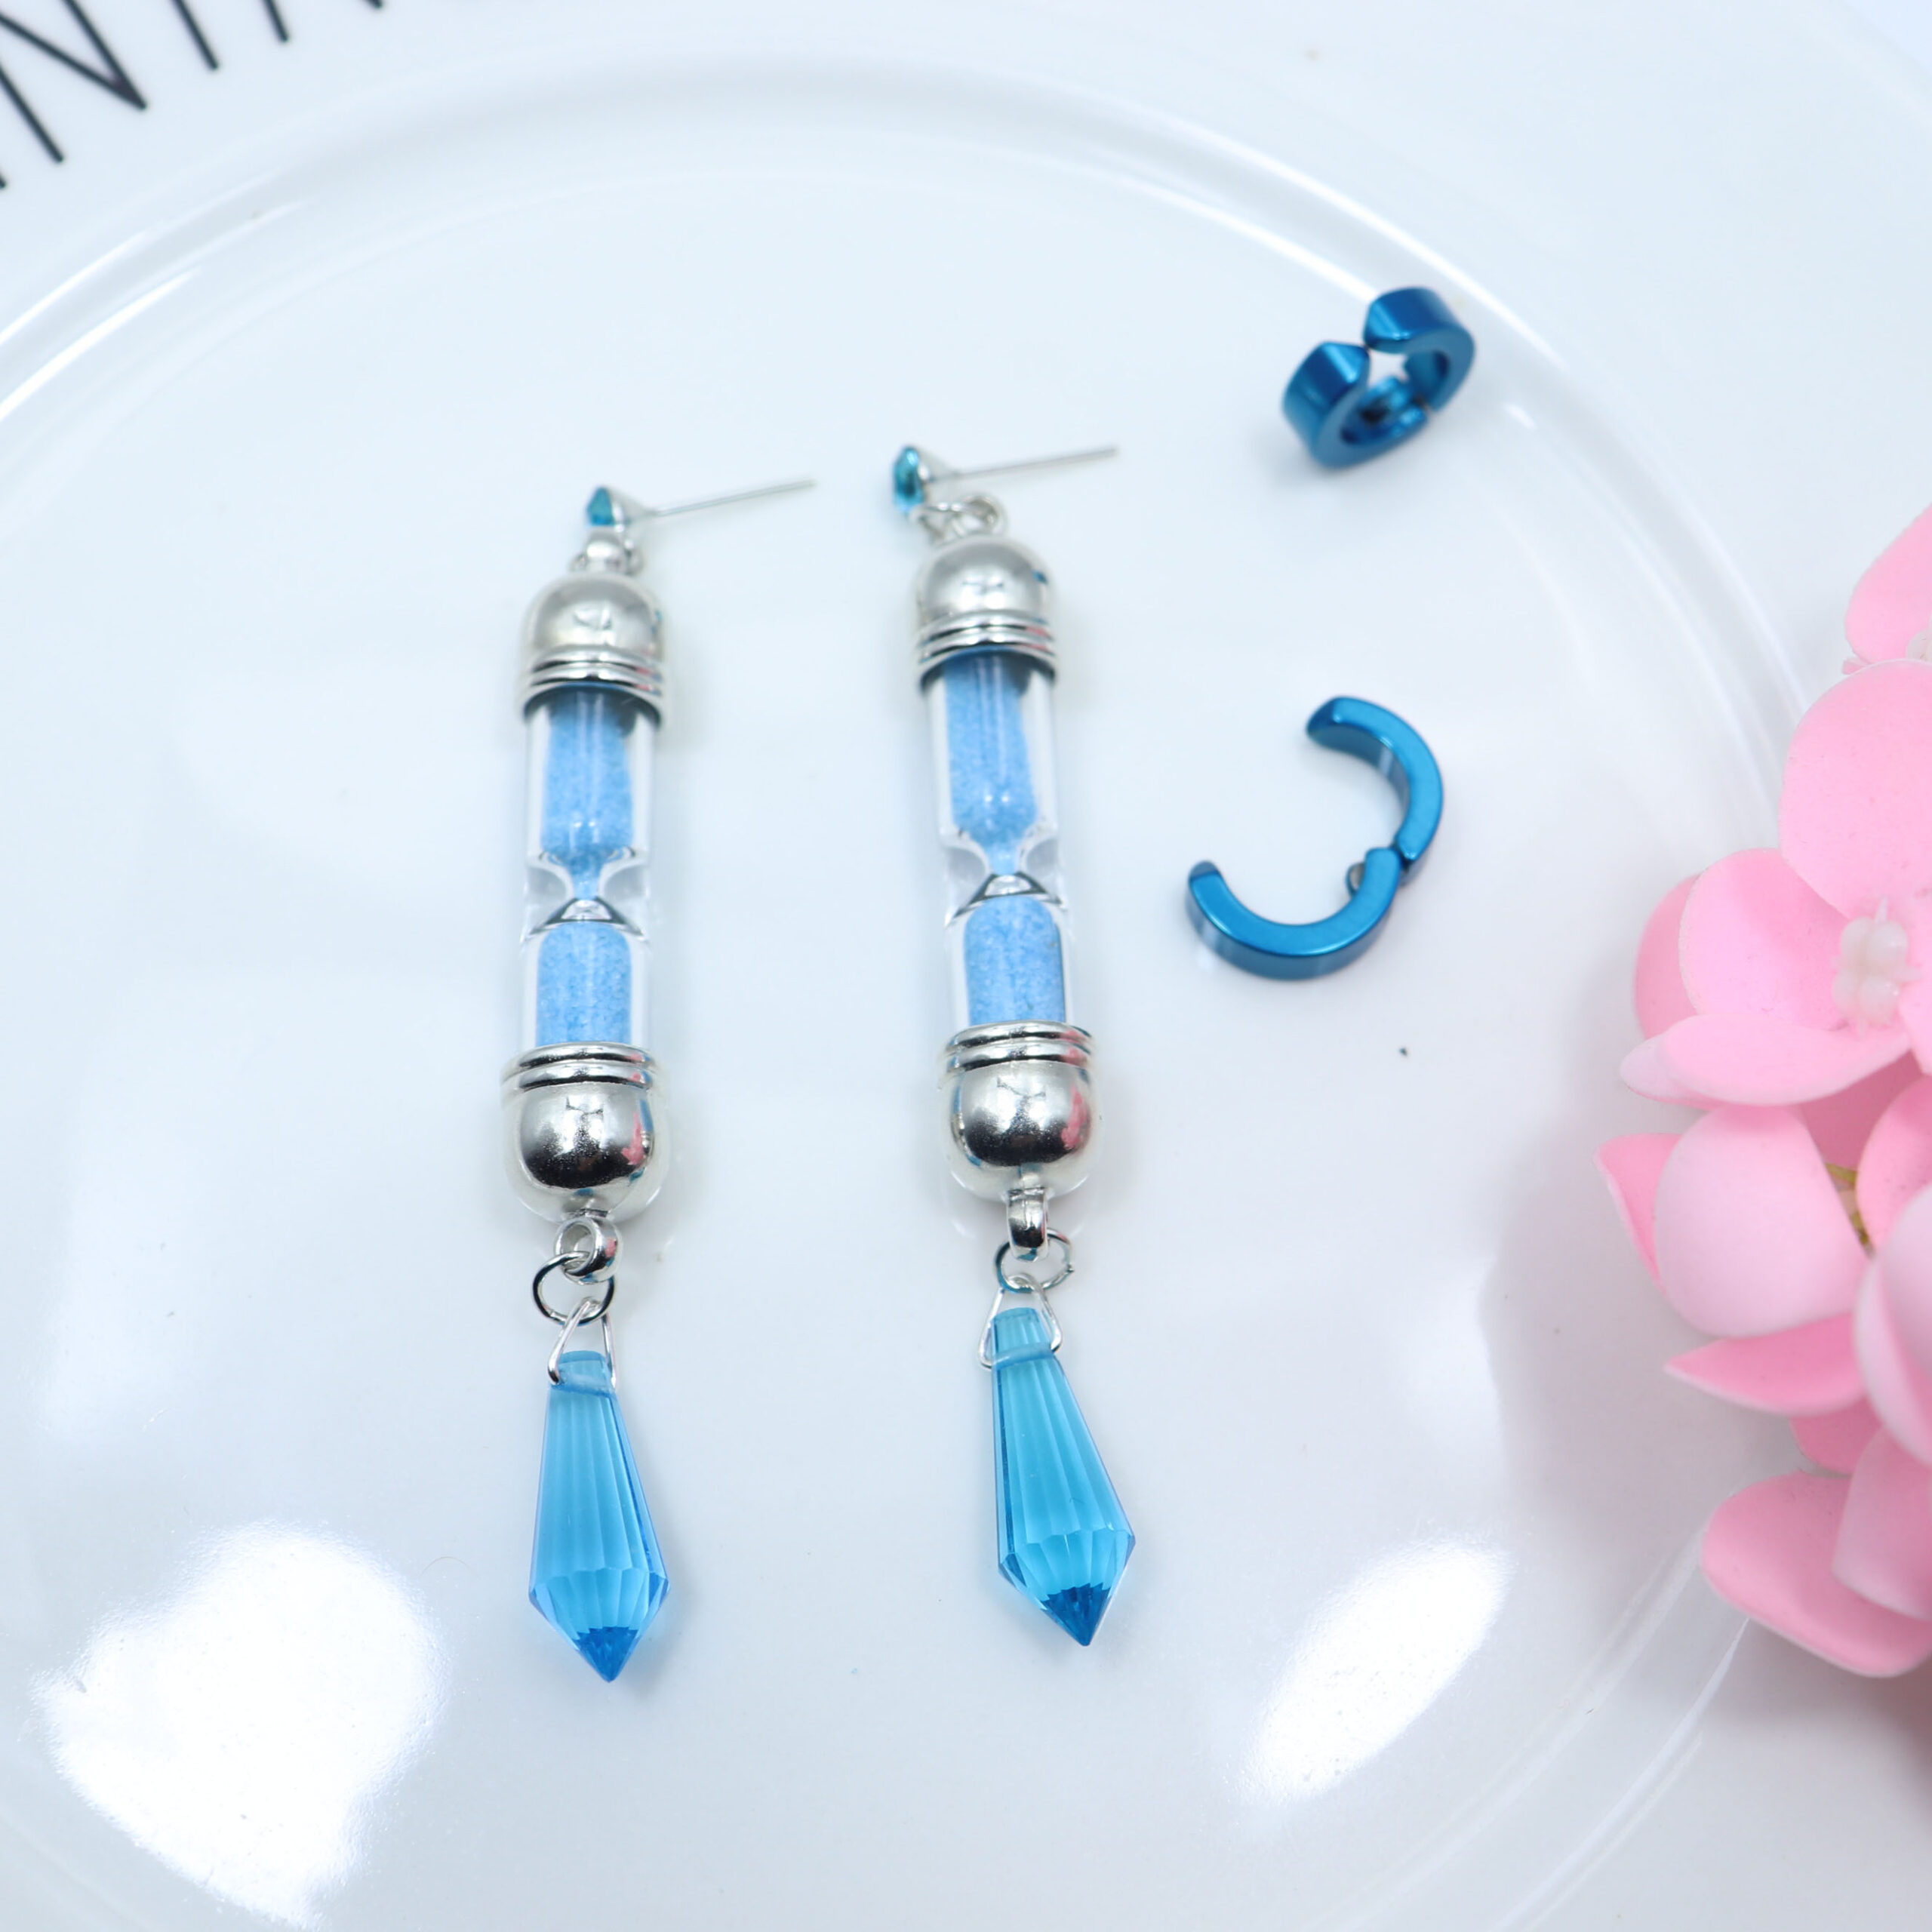 The Case Study of Vanitas – Vanitas Themed Beautiful Earrings (5 Designs) Rings & Earrings